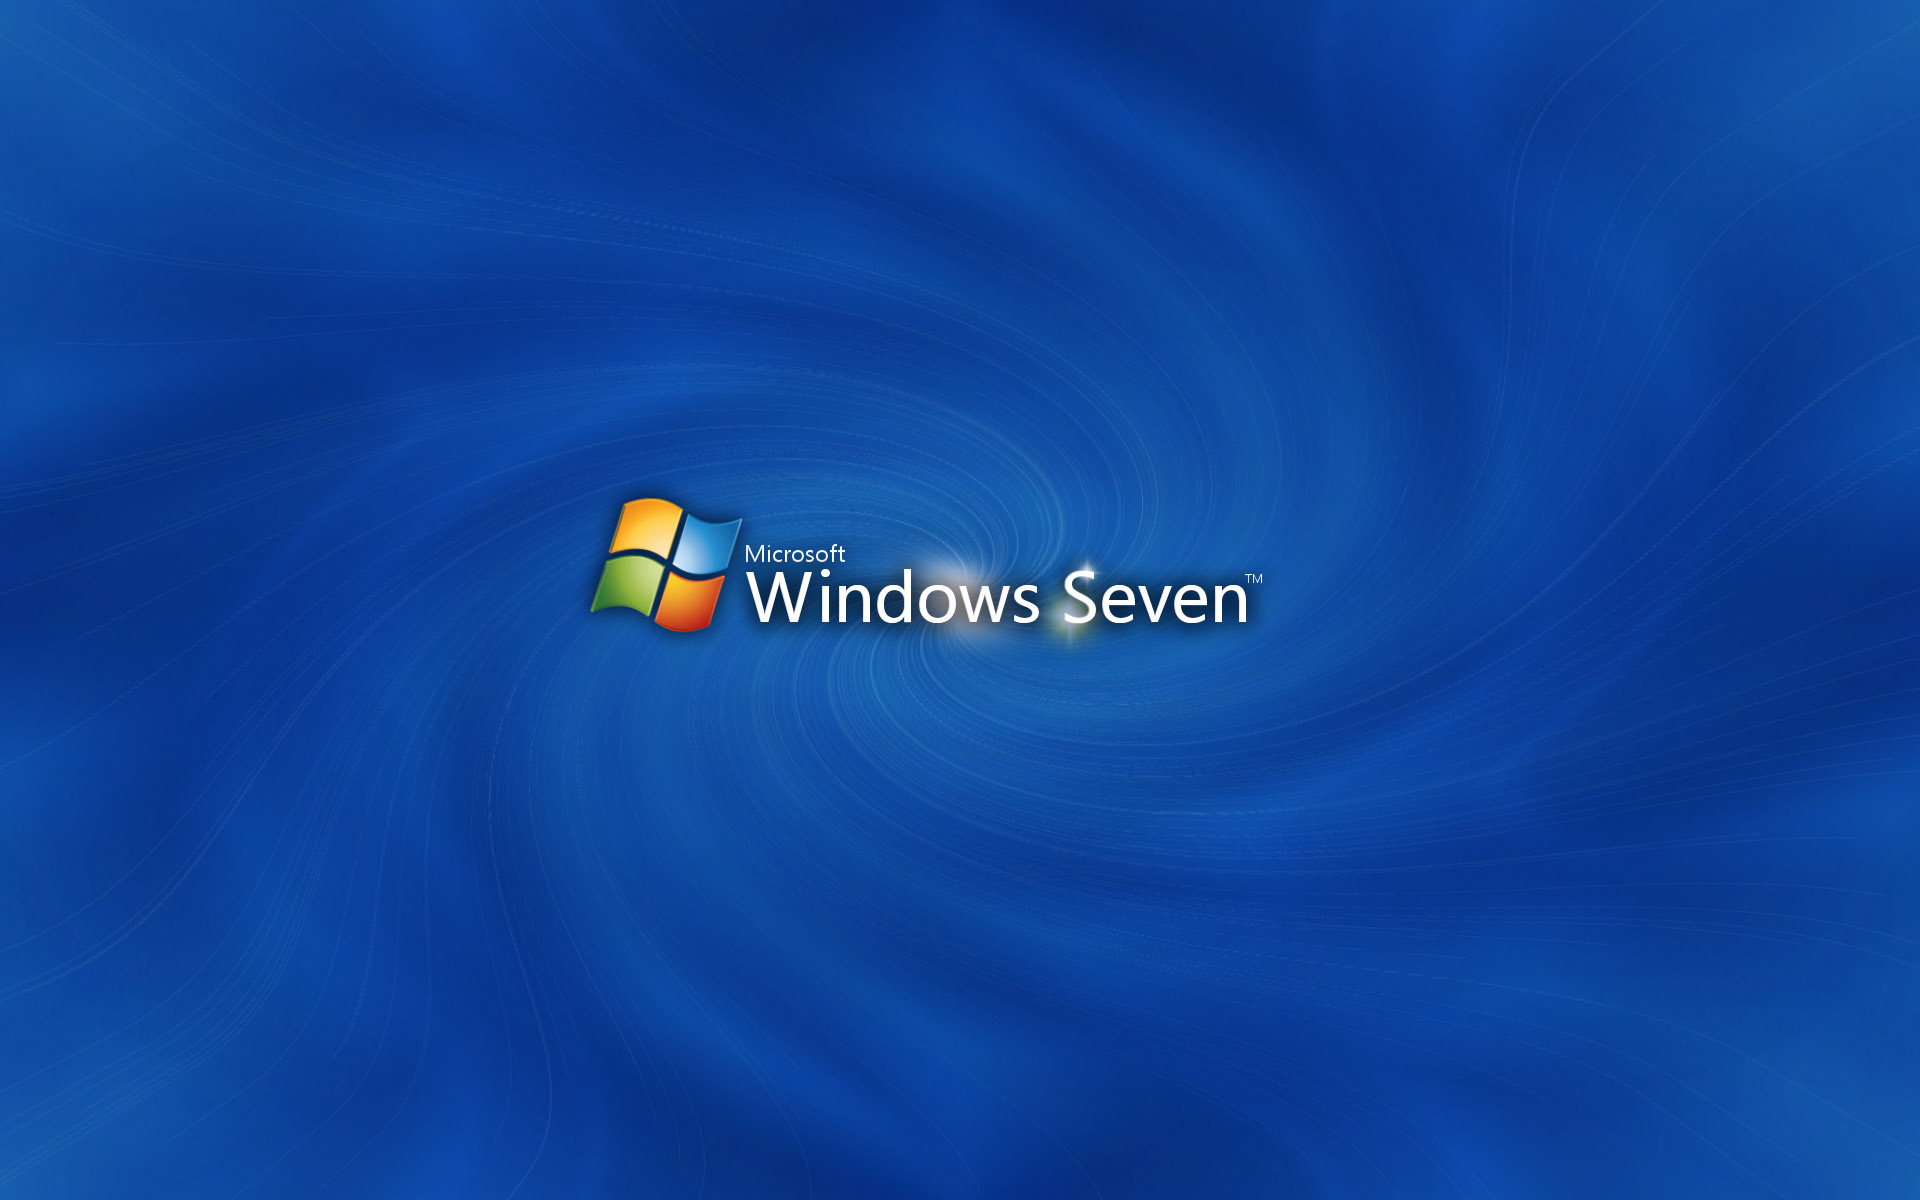 壁纸1920x1200Windows7 5 11壁纸 Windows7壁纸 Windows7图片 Windows7素材 系统壁纸 系统图库 系统图片素材桌面壁纸